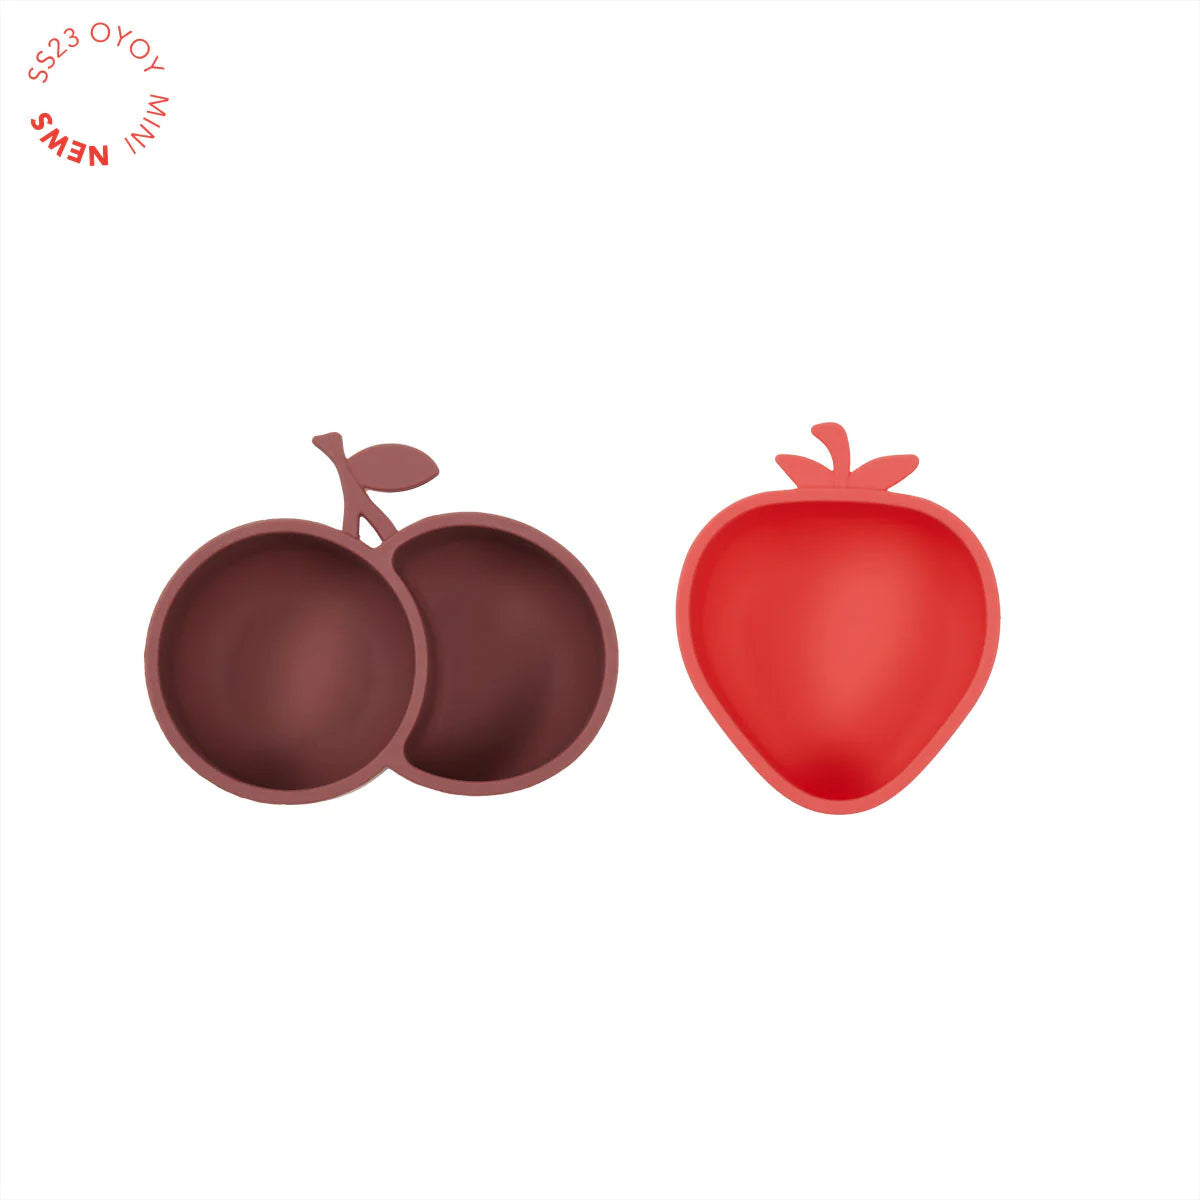 Yummy Strawberry & Cherry Snack Bowl × 2 Cherry Red / Nutmeg